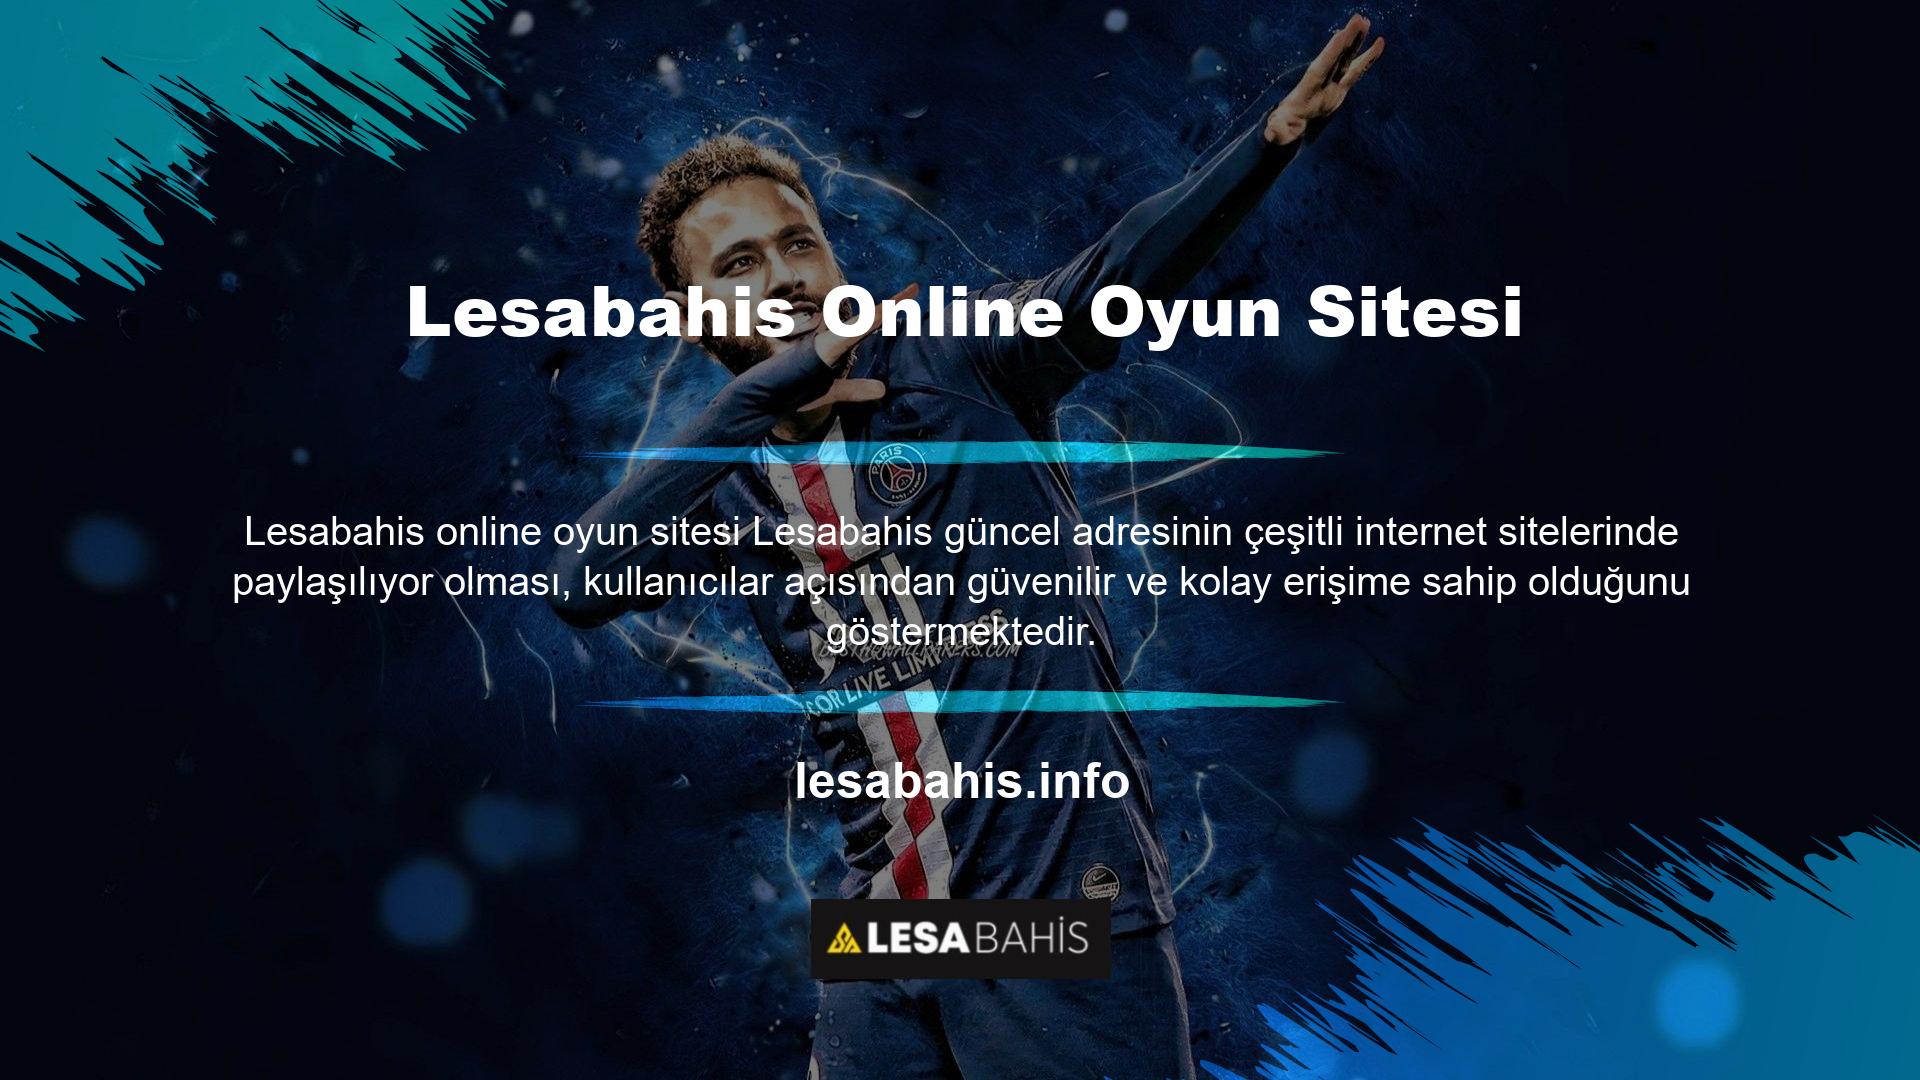 Lesabahis çevrimiçi oyun sitesine yapılan güncel ziyaret sayısı, alan adına üç haneli bir sayı eklenerek belirlenir